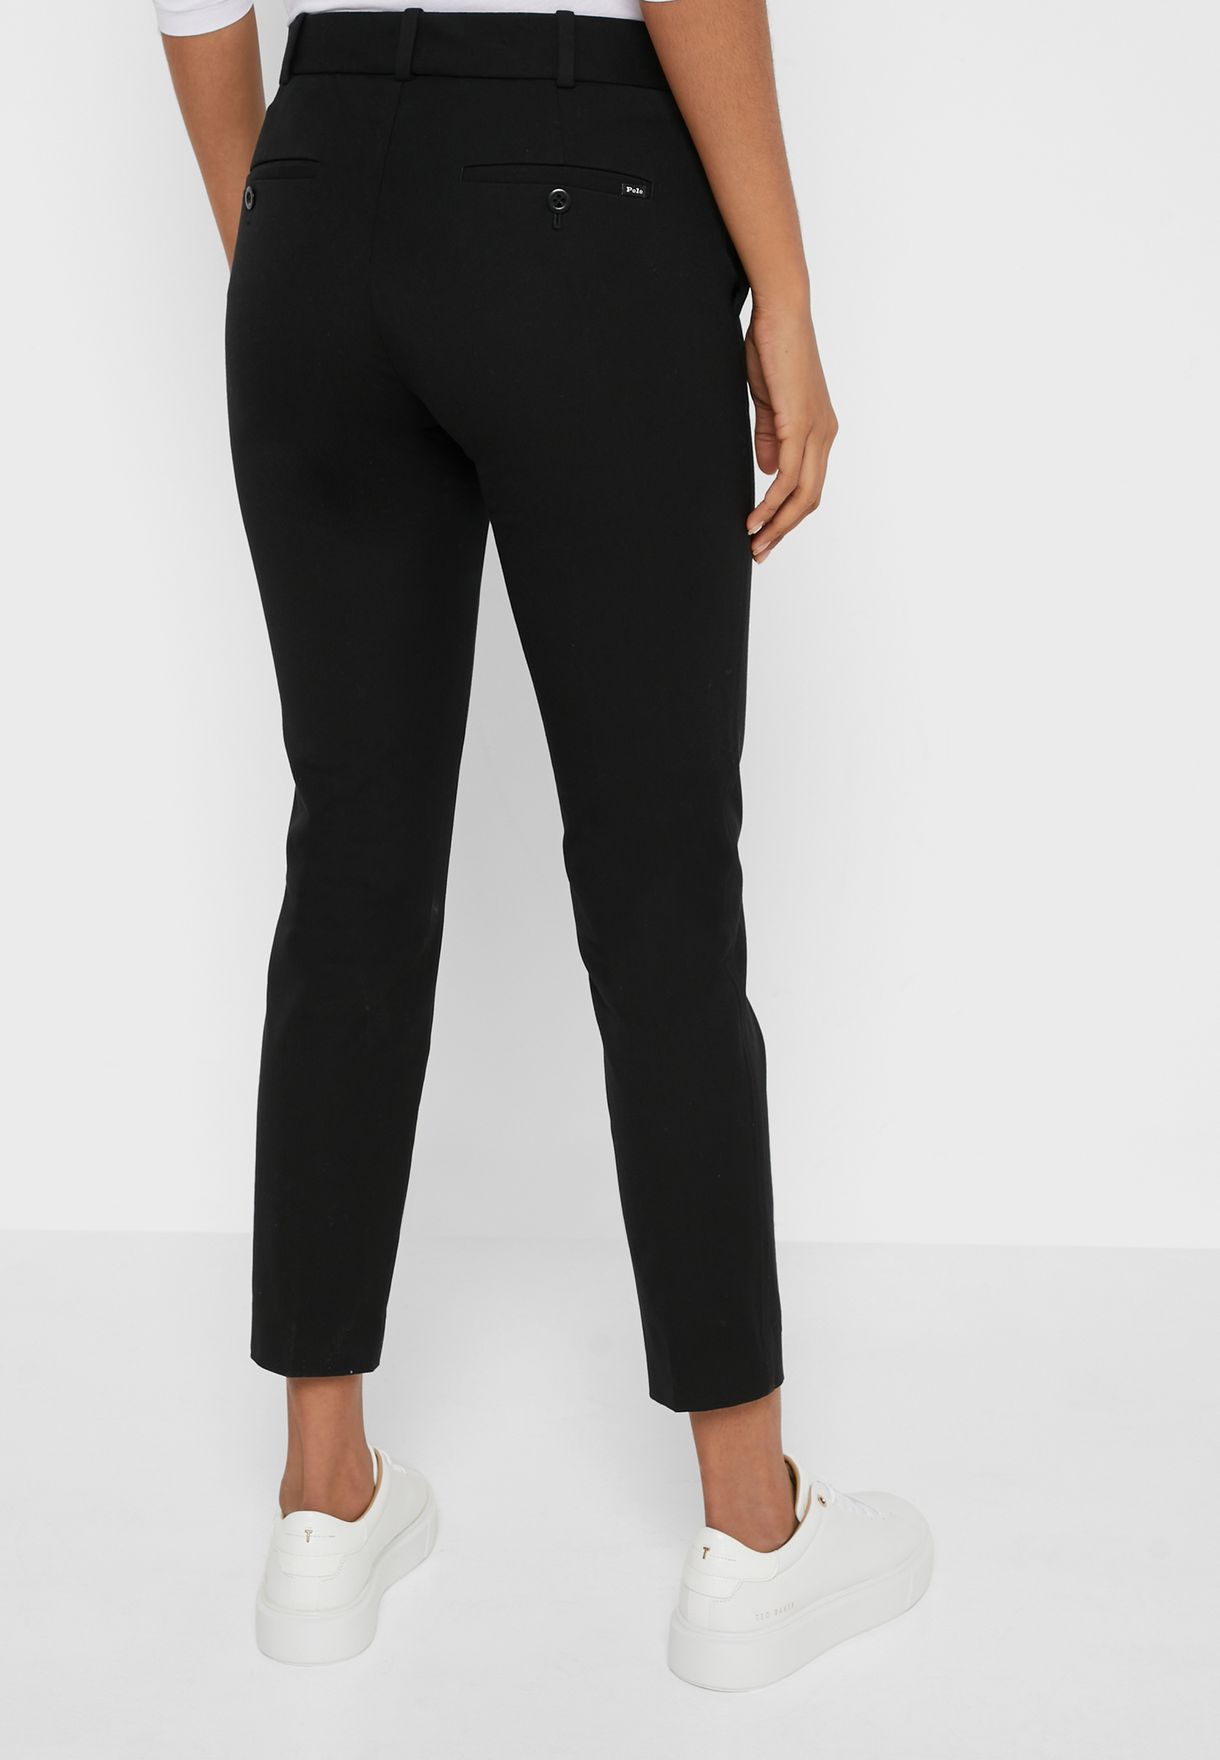 Black Ralph Lauren High Waist Women's Pants | 8491-YEHQX